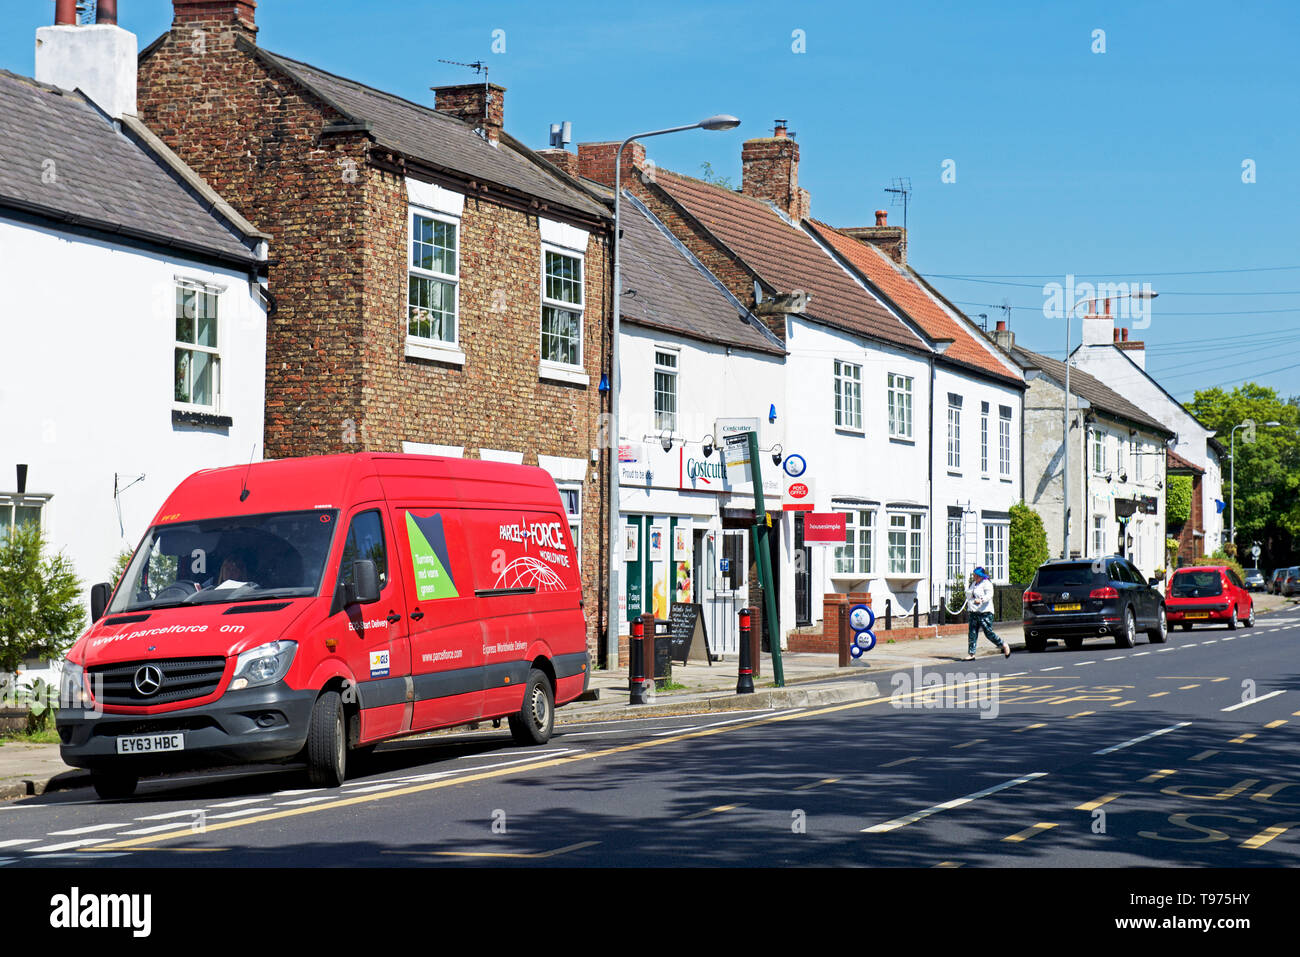 High Street, dans le village de Rawcliffe, East Yorkshire, England UK Banque D'Images